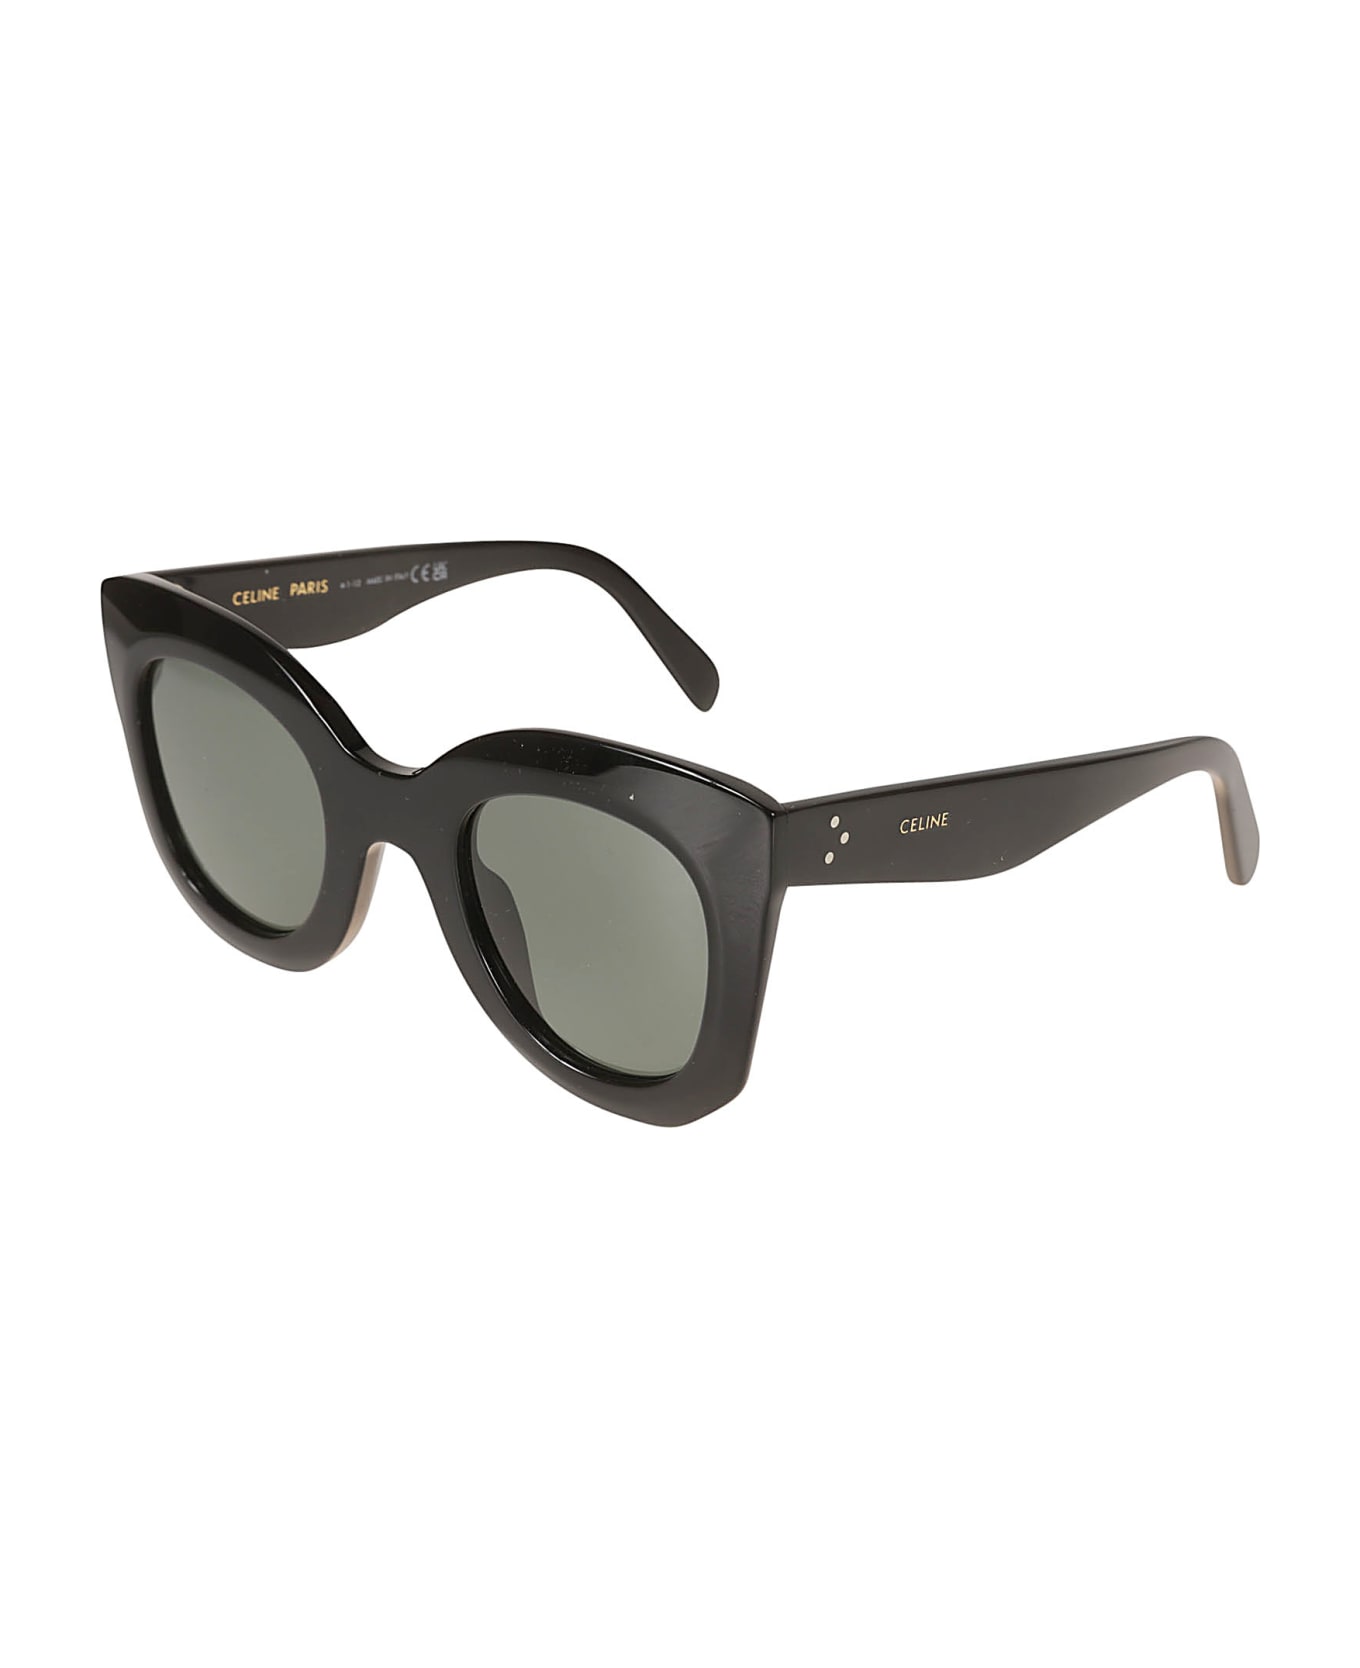 Celine Ck4005in Sunglasses - 01n